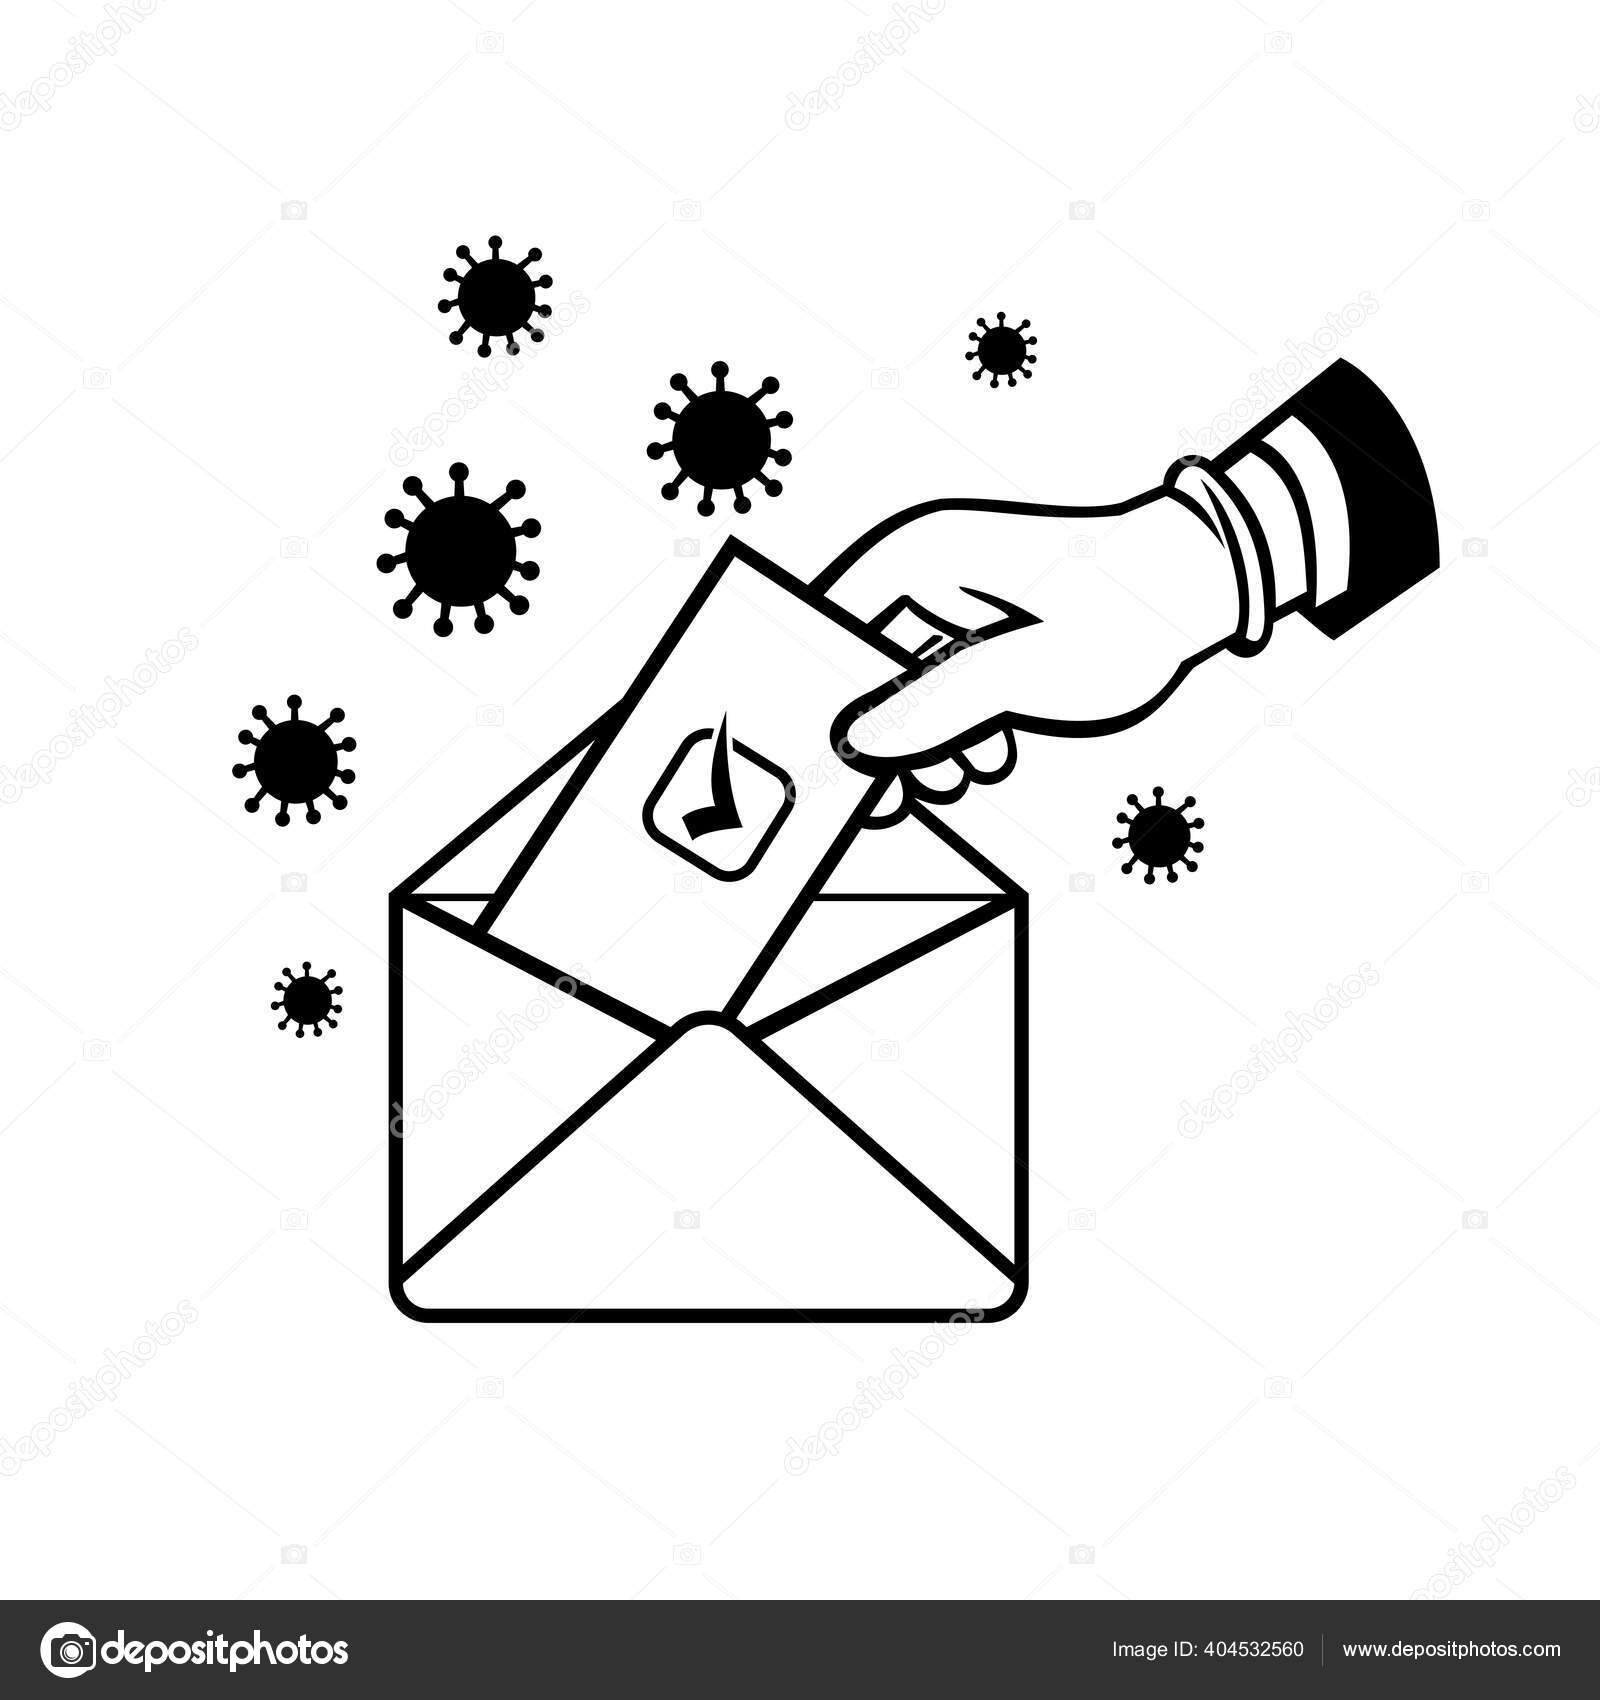 パンデミック時の手袋の手の投票でアメリカの有権者のレトロなスタイルのイラストcovid 19コロナウイルスのロックダウン黒と白で郵便投票封筒の中に投票や投票を入れて ストックベクター C Patrimonio